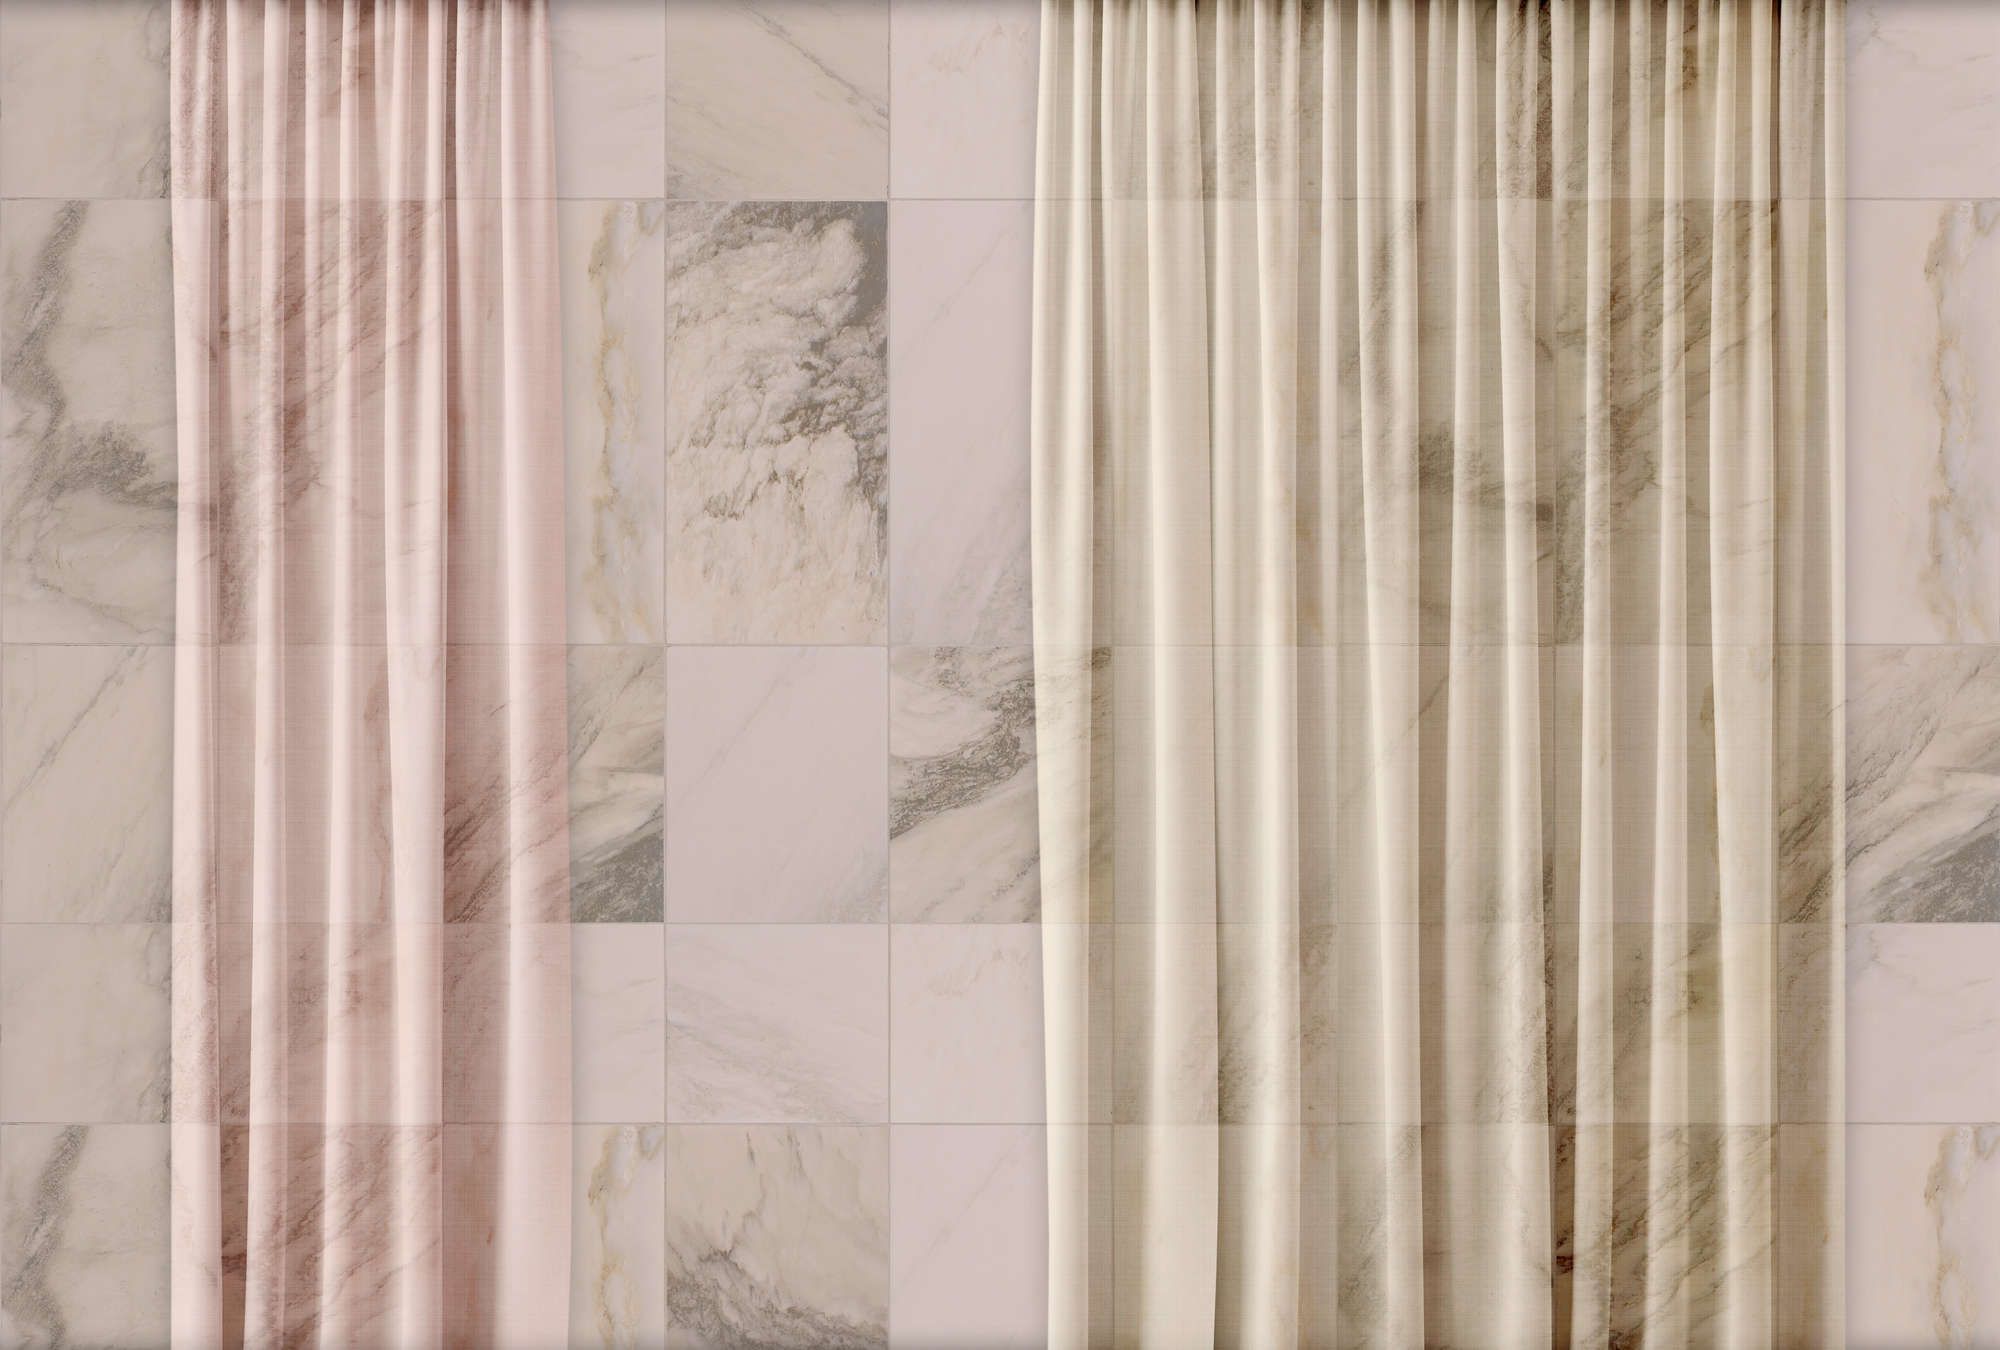             Digital behang »nova 3« - subtiel vallende gordijnen voor een beige marmeren muur - matte, gladde vliesstof
        